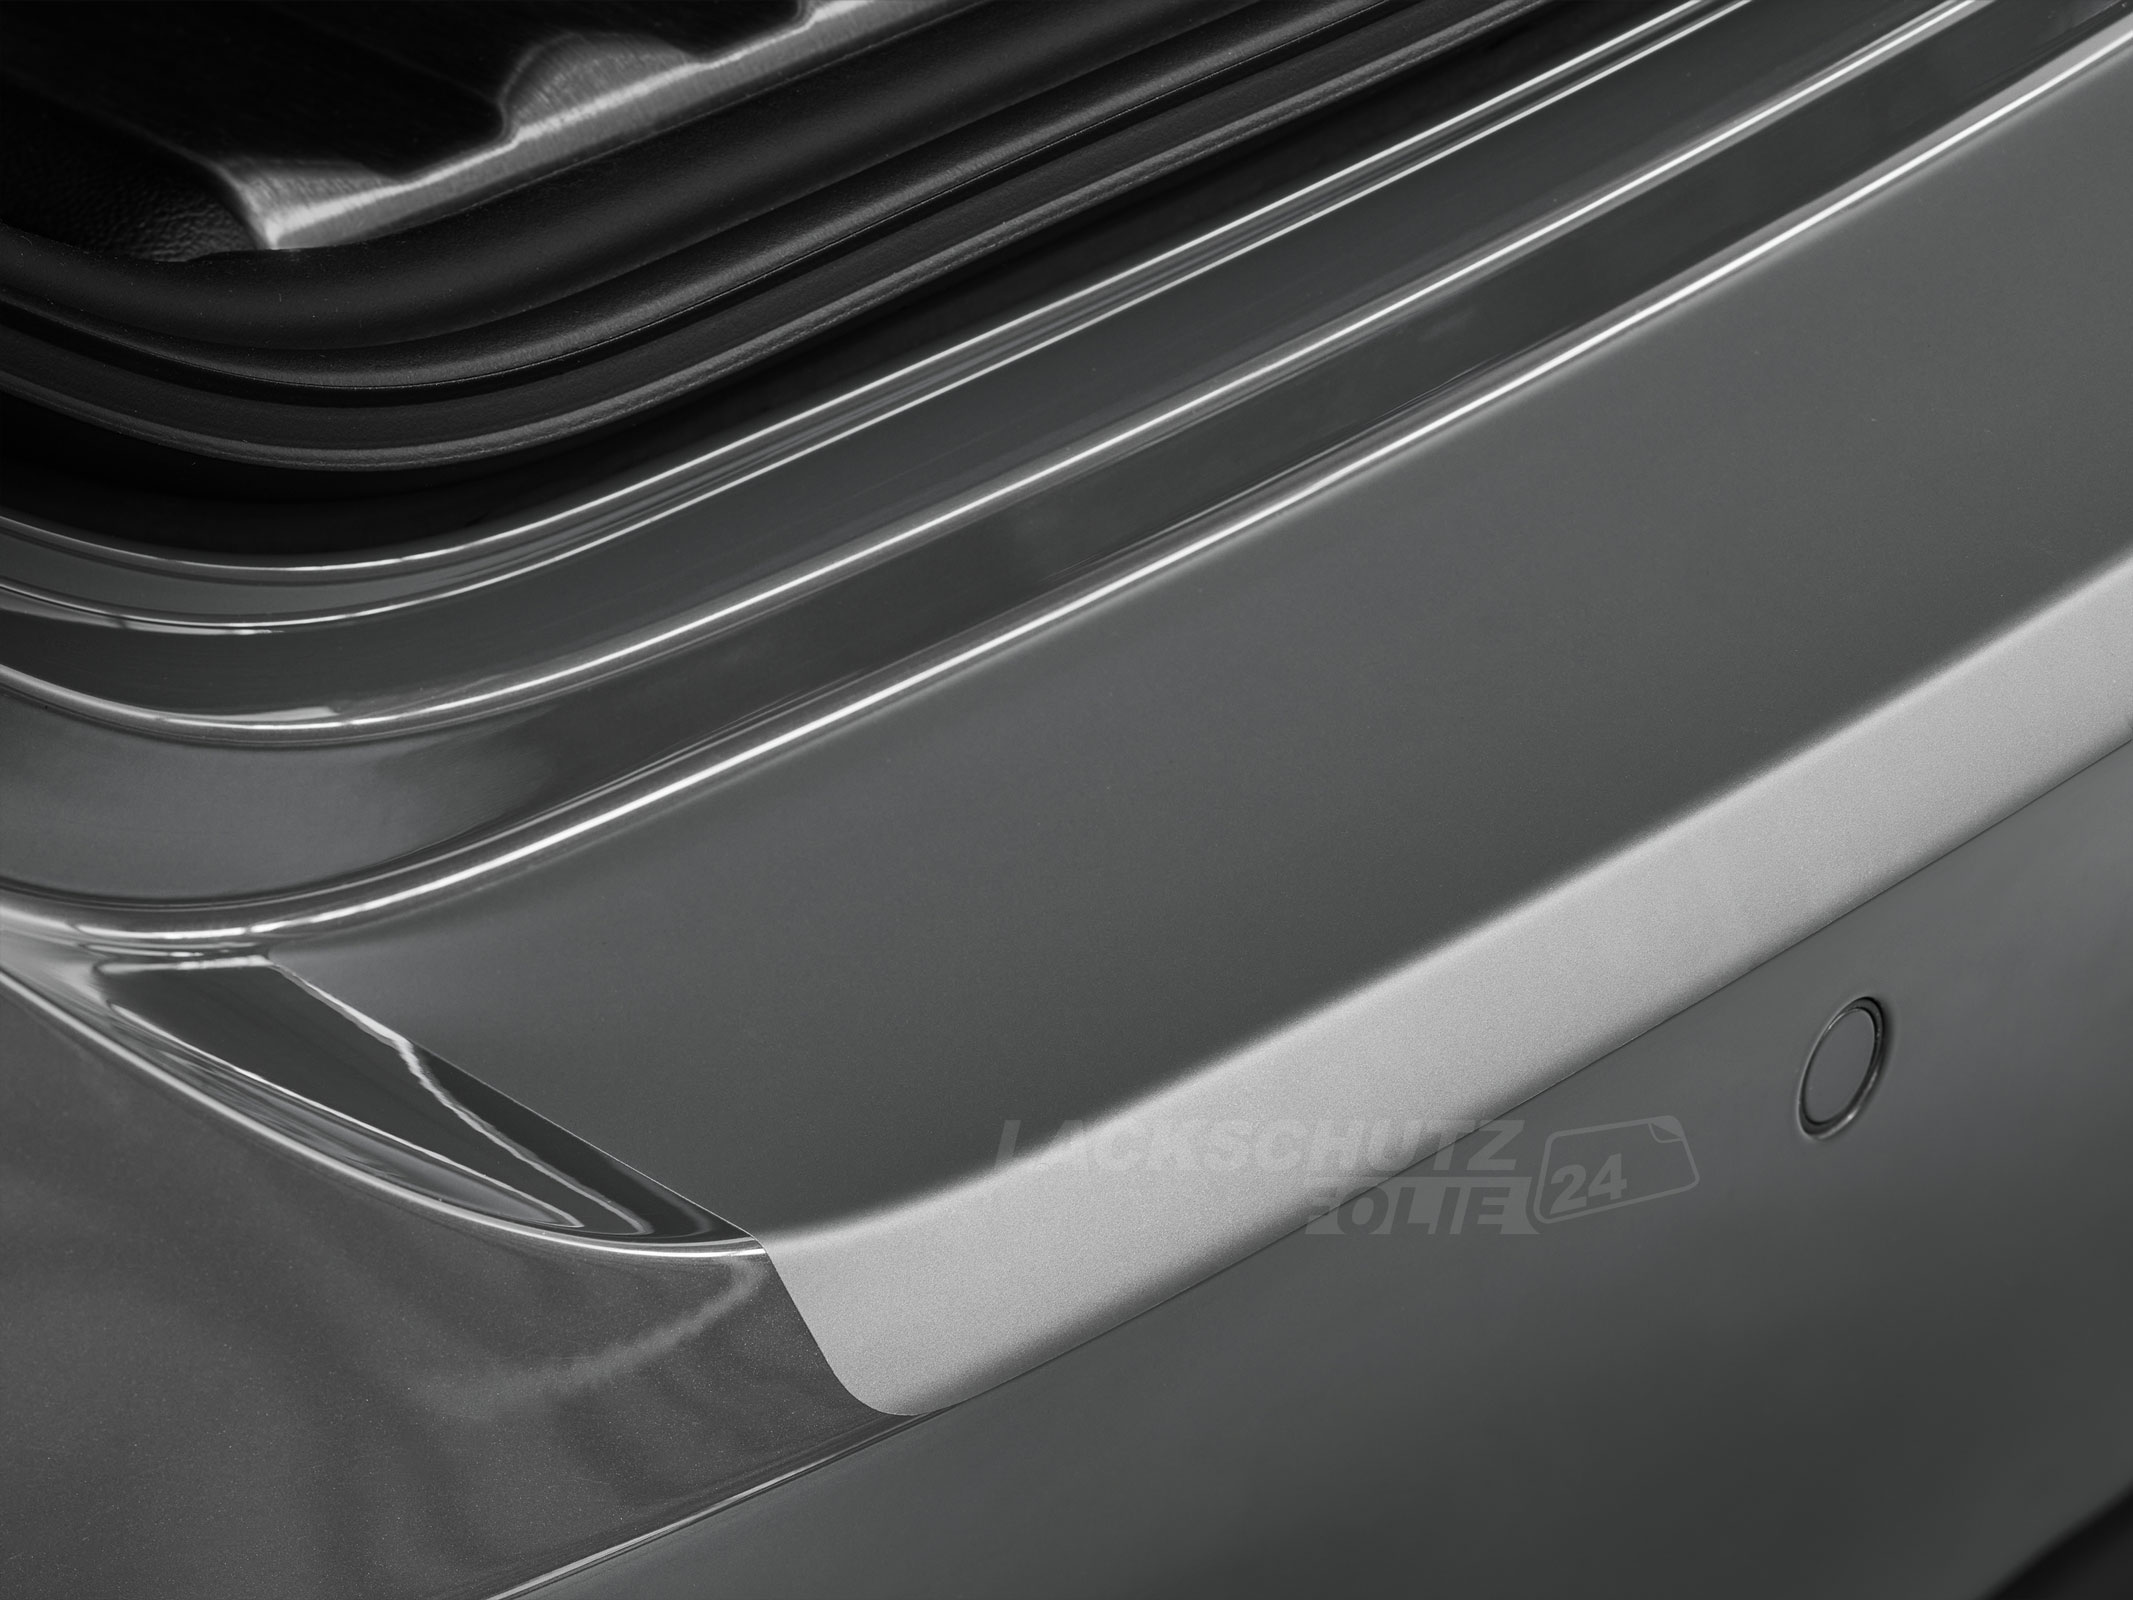 Ladekantenschutzfolie - Transparent Glatt MATT 110 µm stark  für Audi A6 Avant (Kombi) C7, Typ 4G, BJ 10/2011-2018